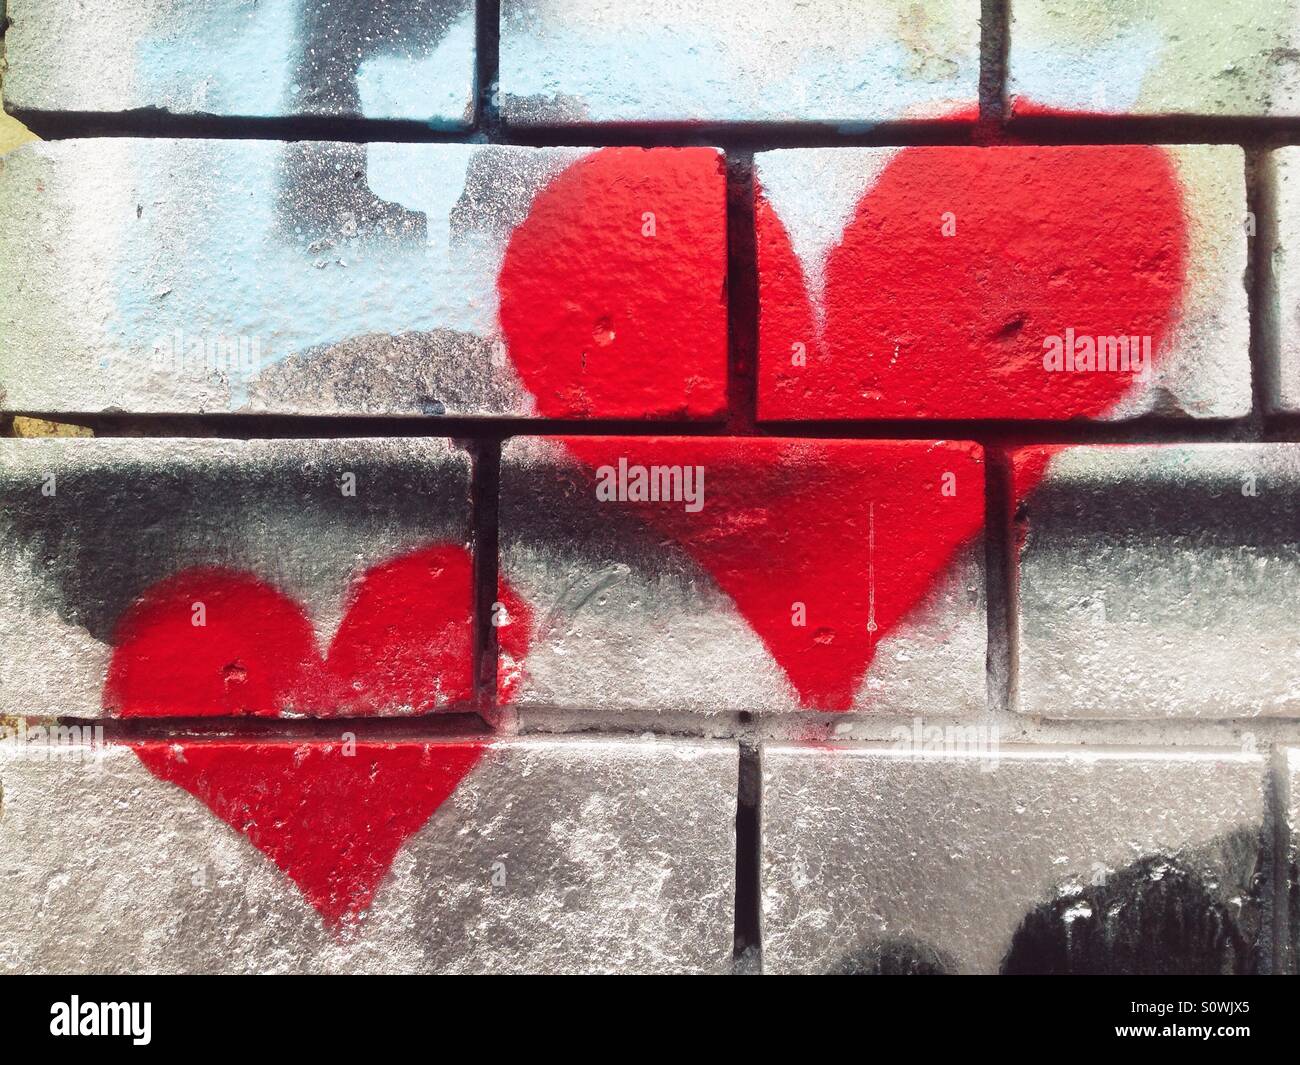 Heart graffiti on a brick wall Stock Photo